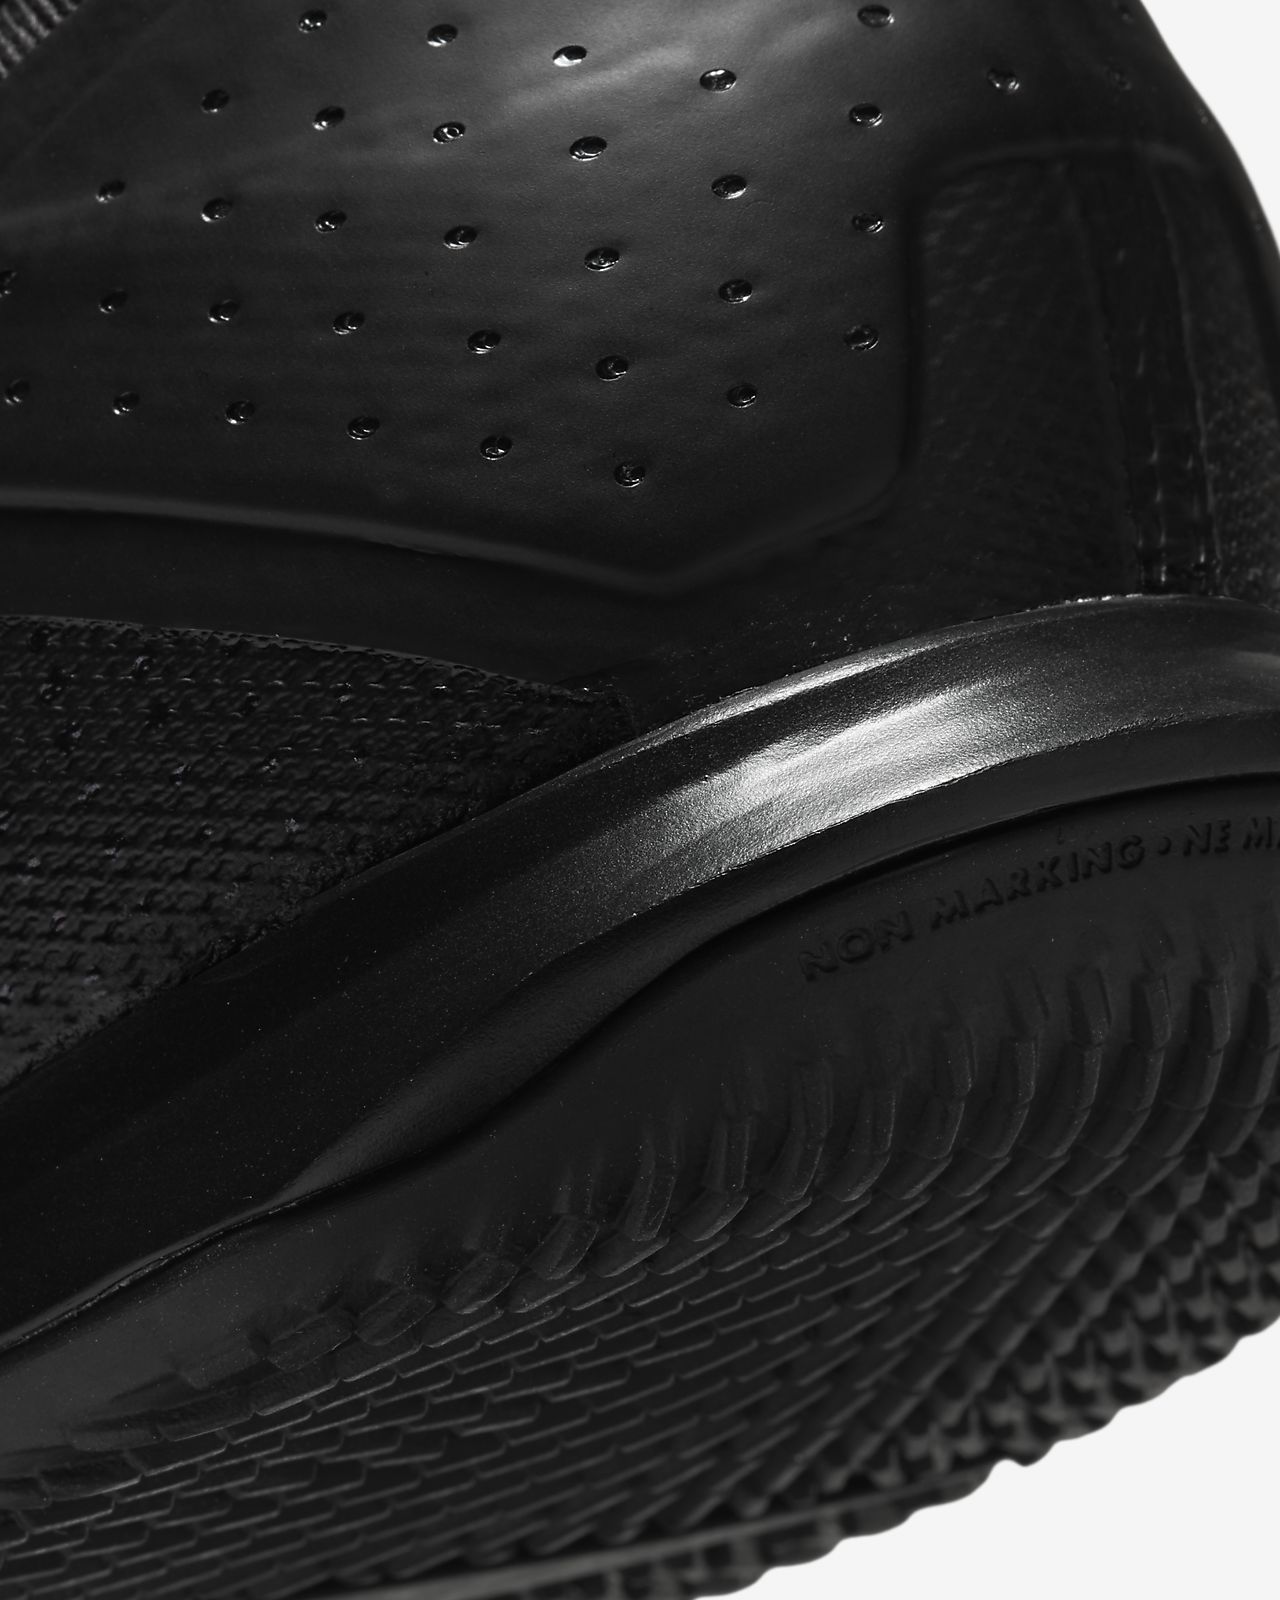 Mercurial Vapor 13 Elite FG 'Black Laser Blue' Nike. Goat